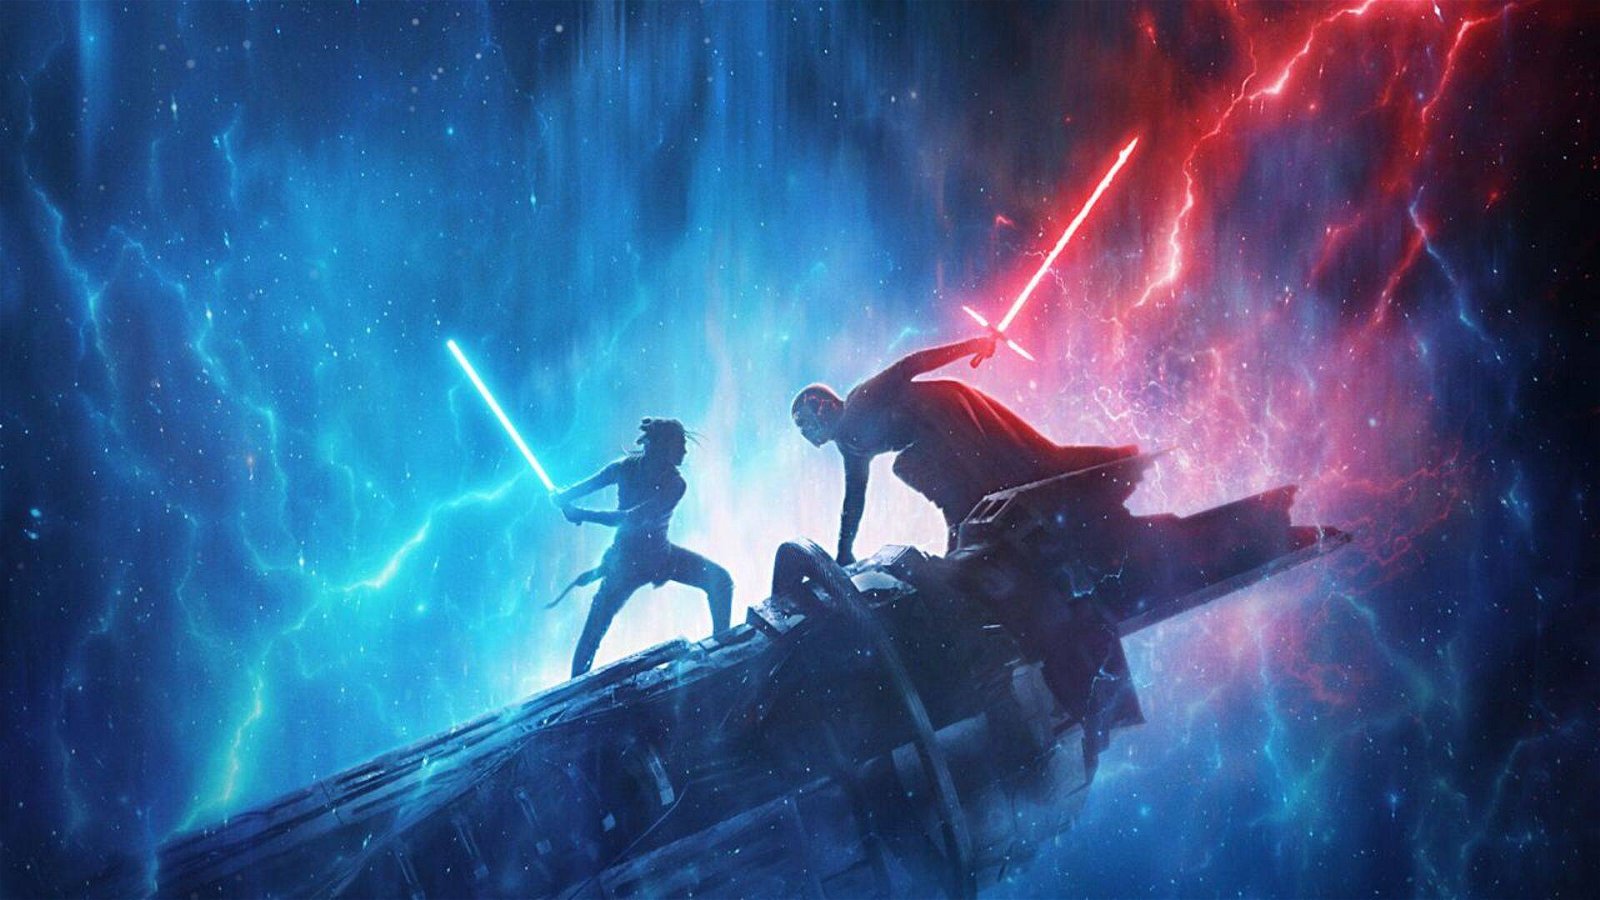 Immagine di Star Wars IX: nuovo poster IMAX con Leia e Luke Skywalker